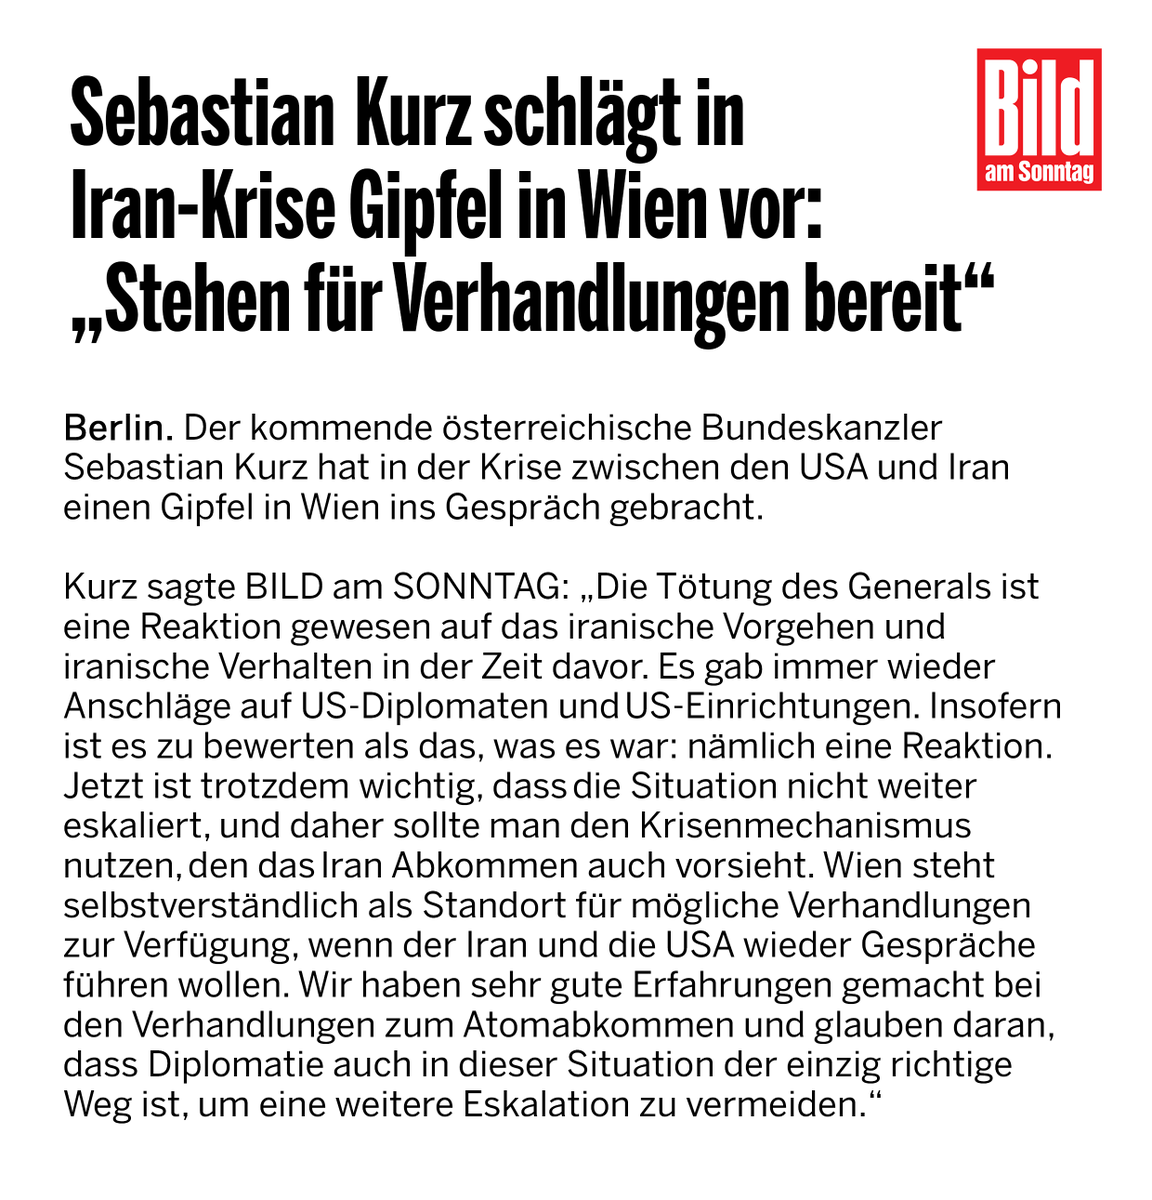 Iran-Krise: @sebastiankurz schlägt Gipfel in Wien vor